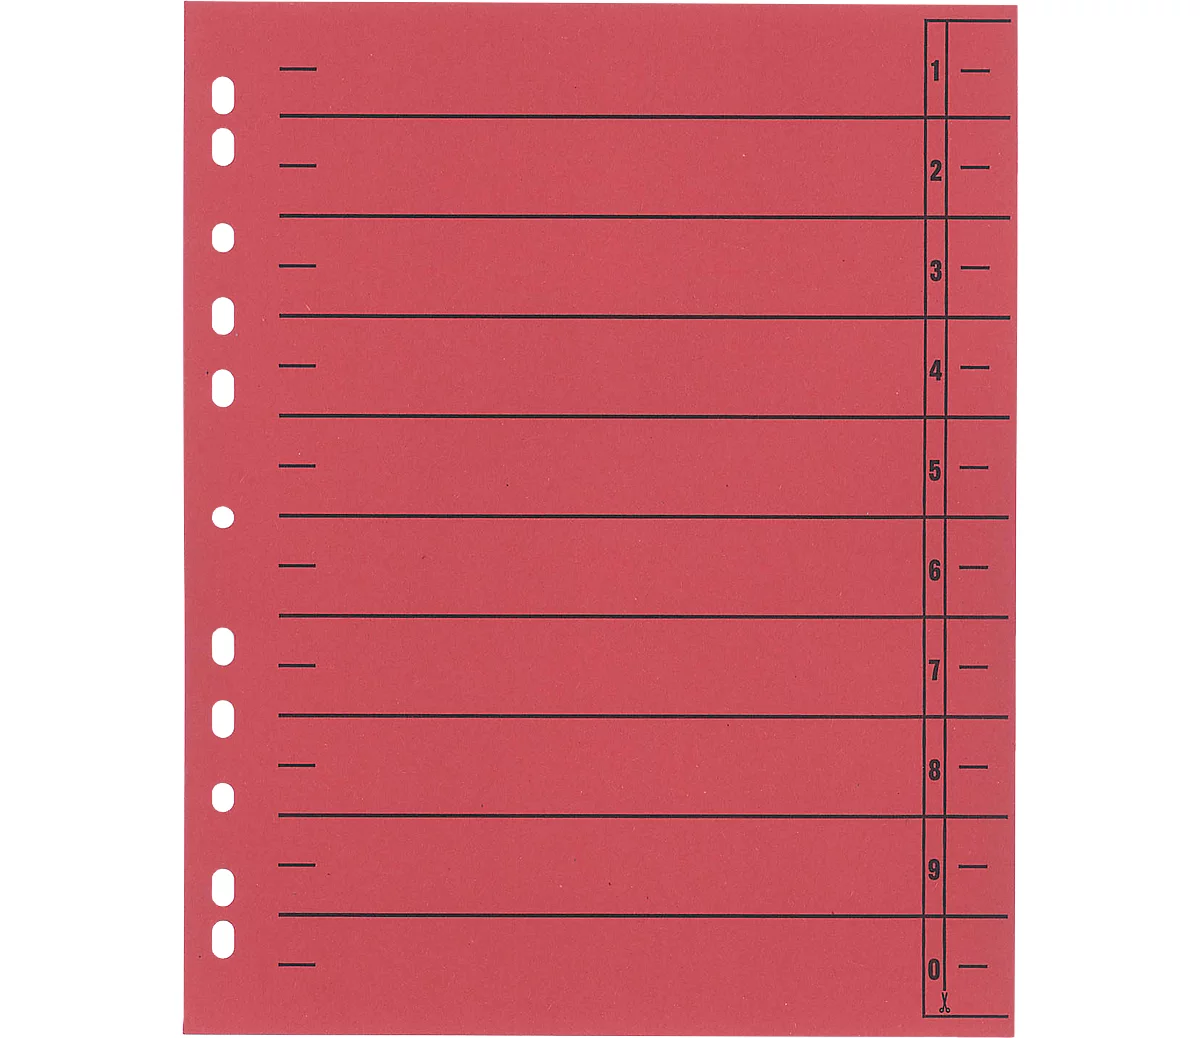 Schäfer Shop Select Separadores con pestañas, formato DIN A4, impresión lineal, 100 unidades, rojo